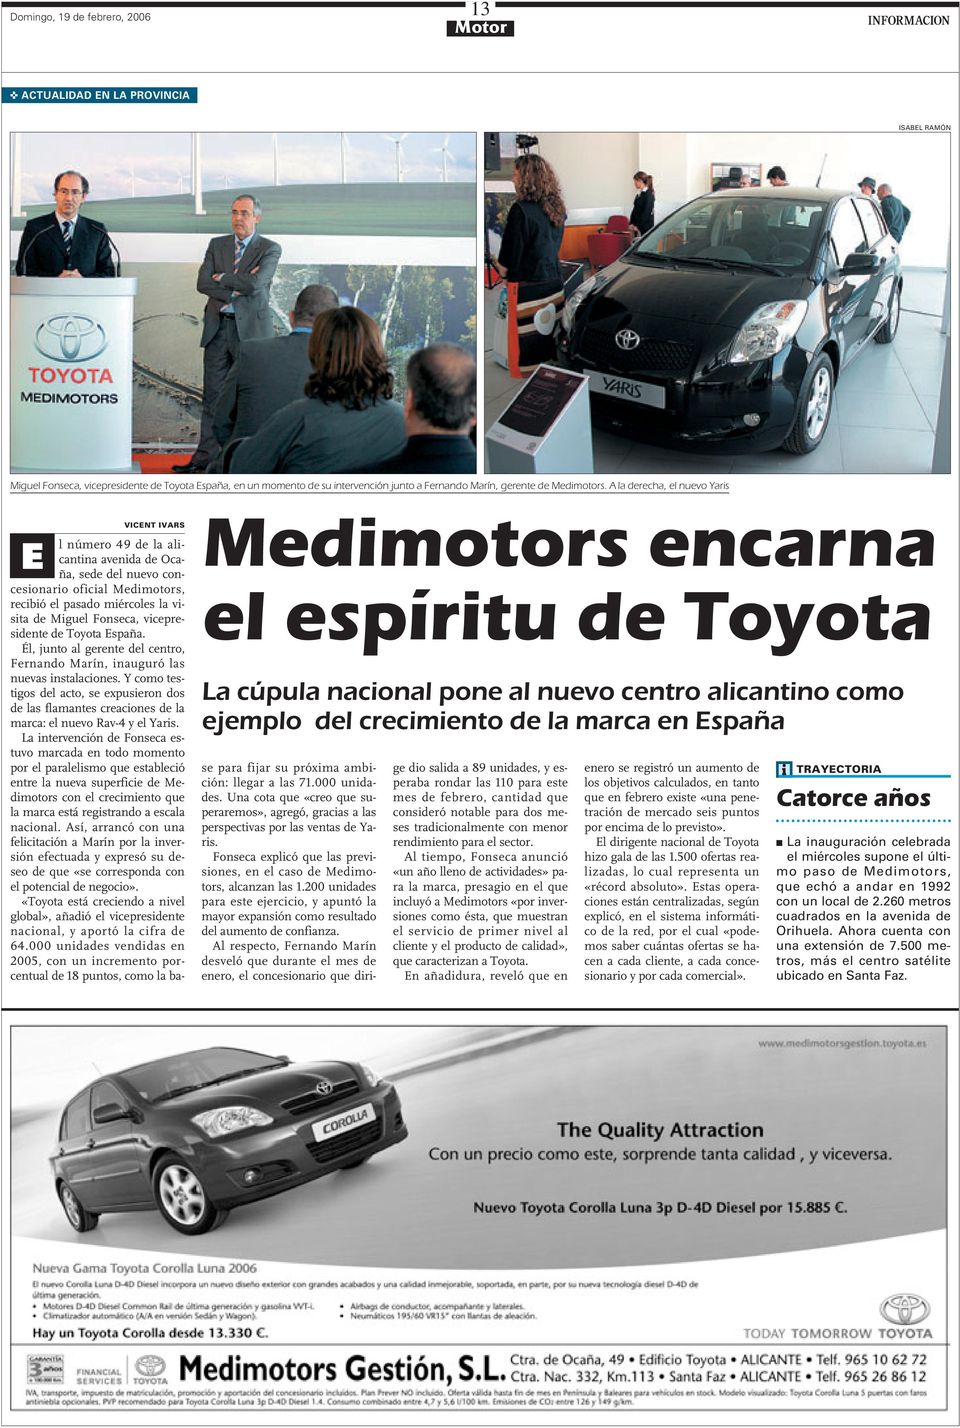 de la alicantina avenida de Ocaña, sede del nuevo concesionario oficial Medimotors, recibió el pasado miércoles la visita de Miguel Fonseca, vicepresidente de Toyota España.